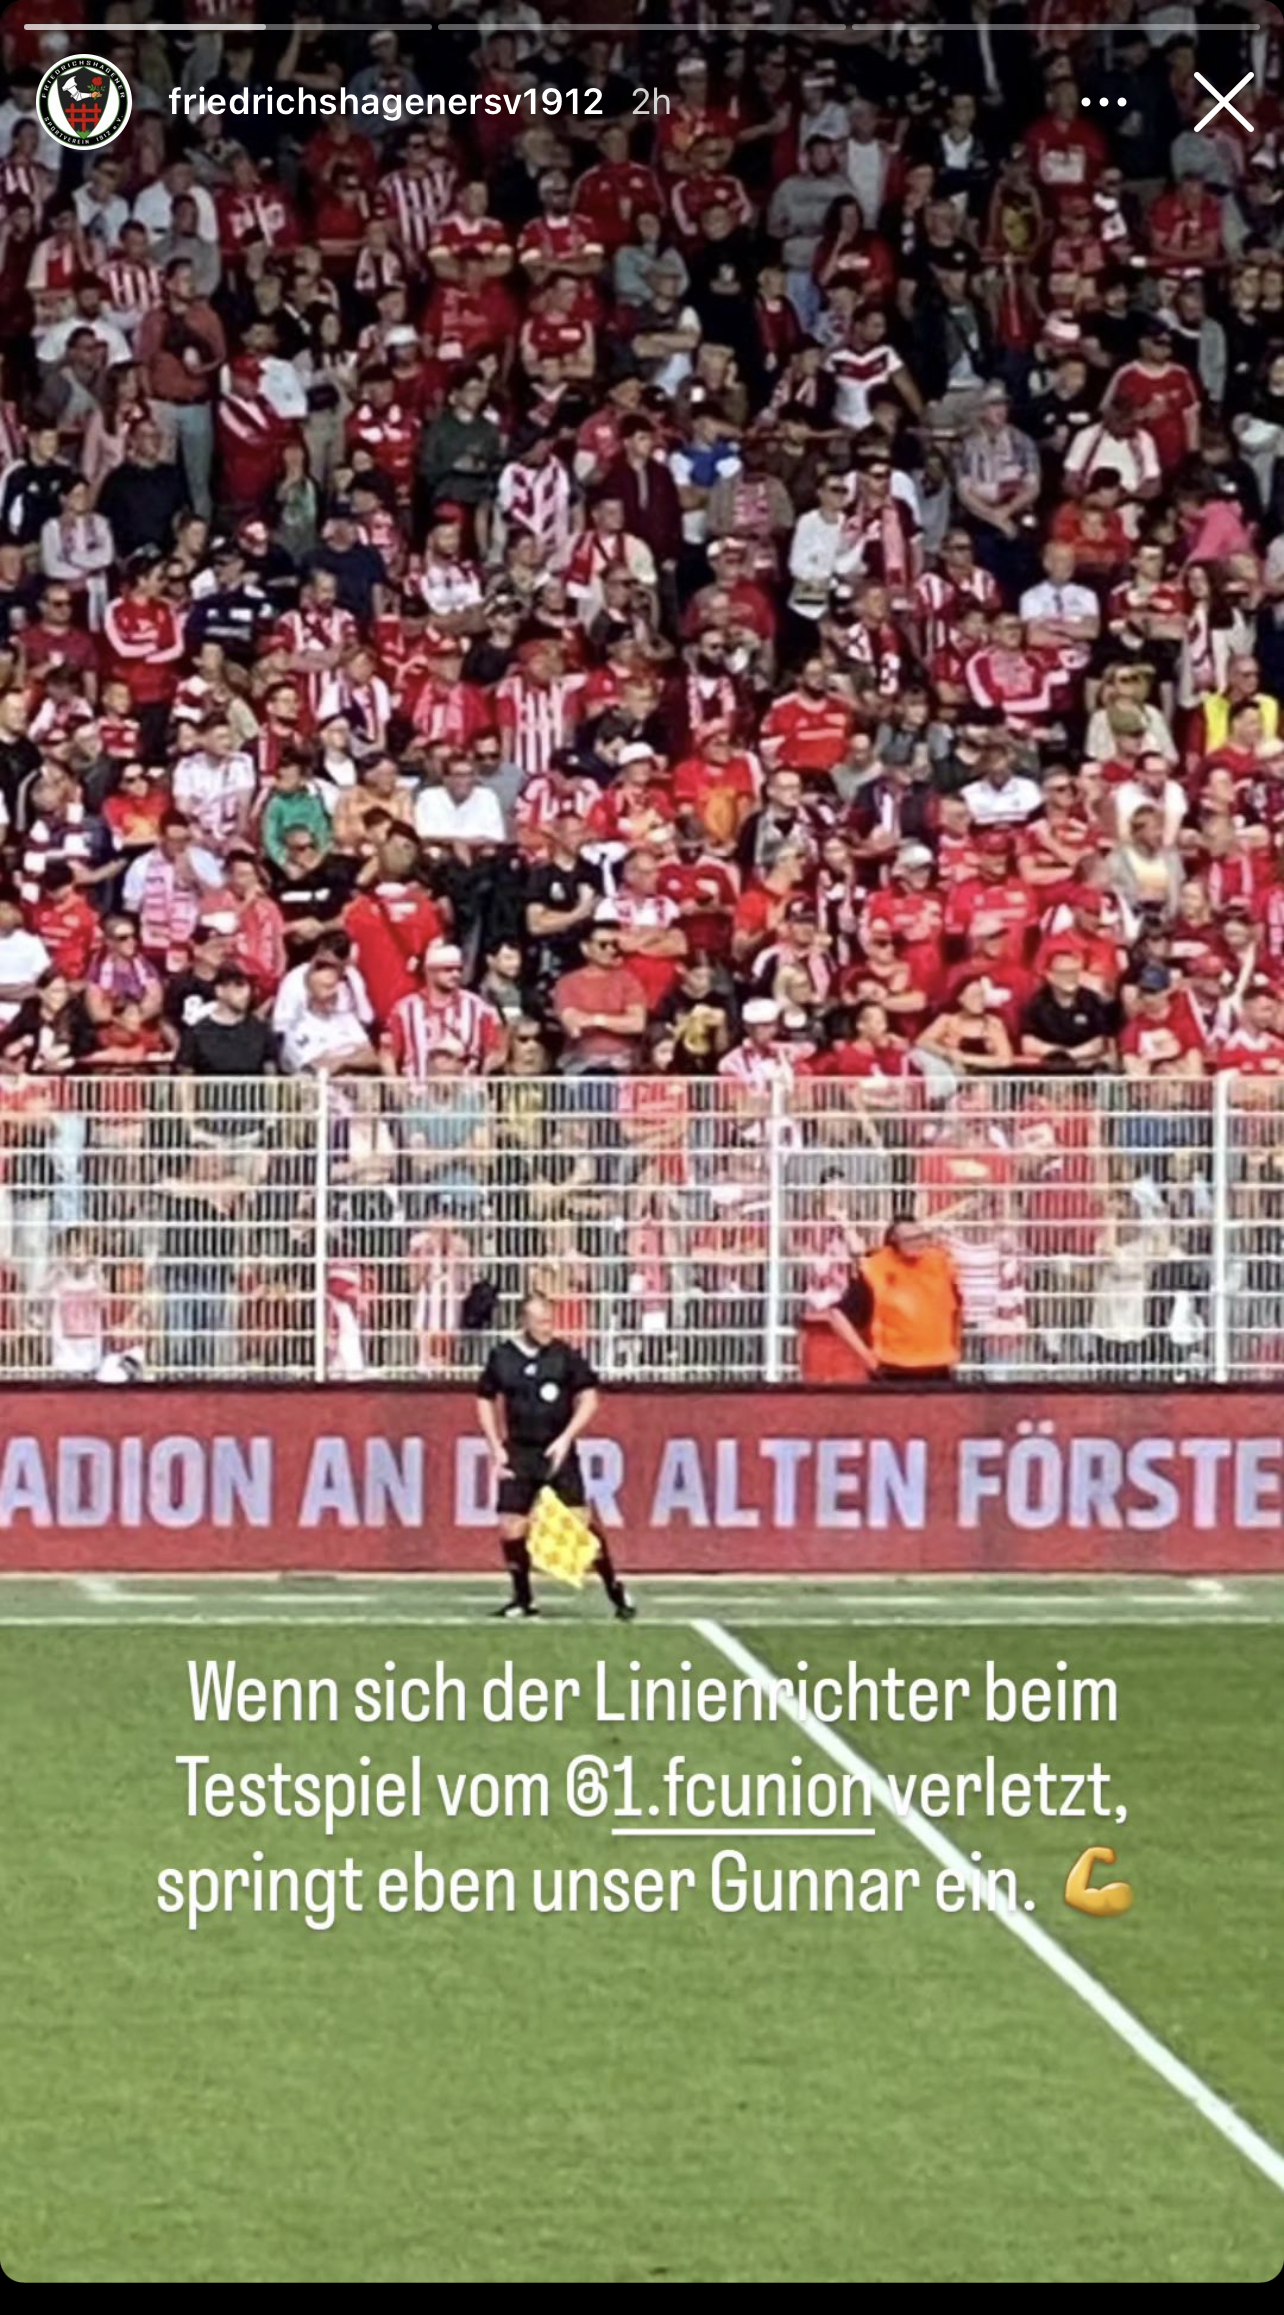 Gunnar Mielenz leistete einen ungeplanten Einsatz an der Außenlinie, Bild: Friedrichshagener SV auf Instagram 